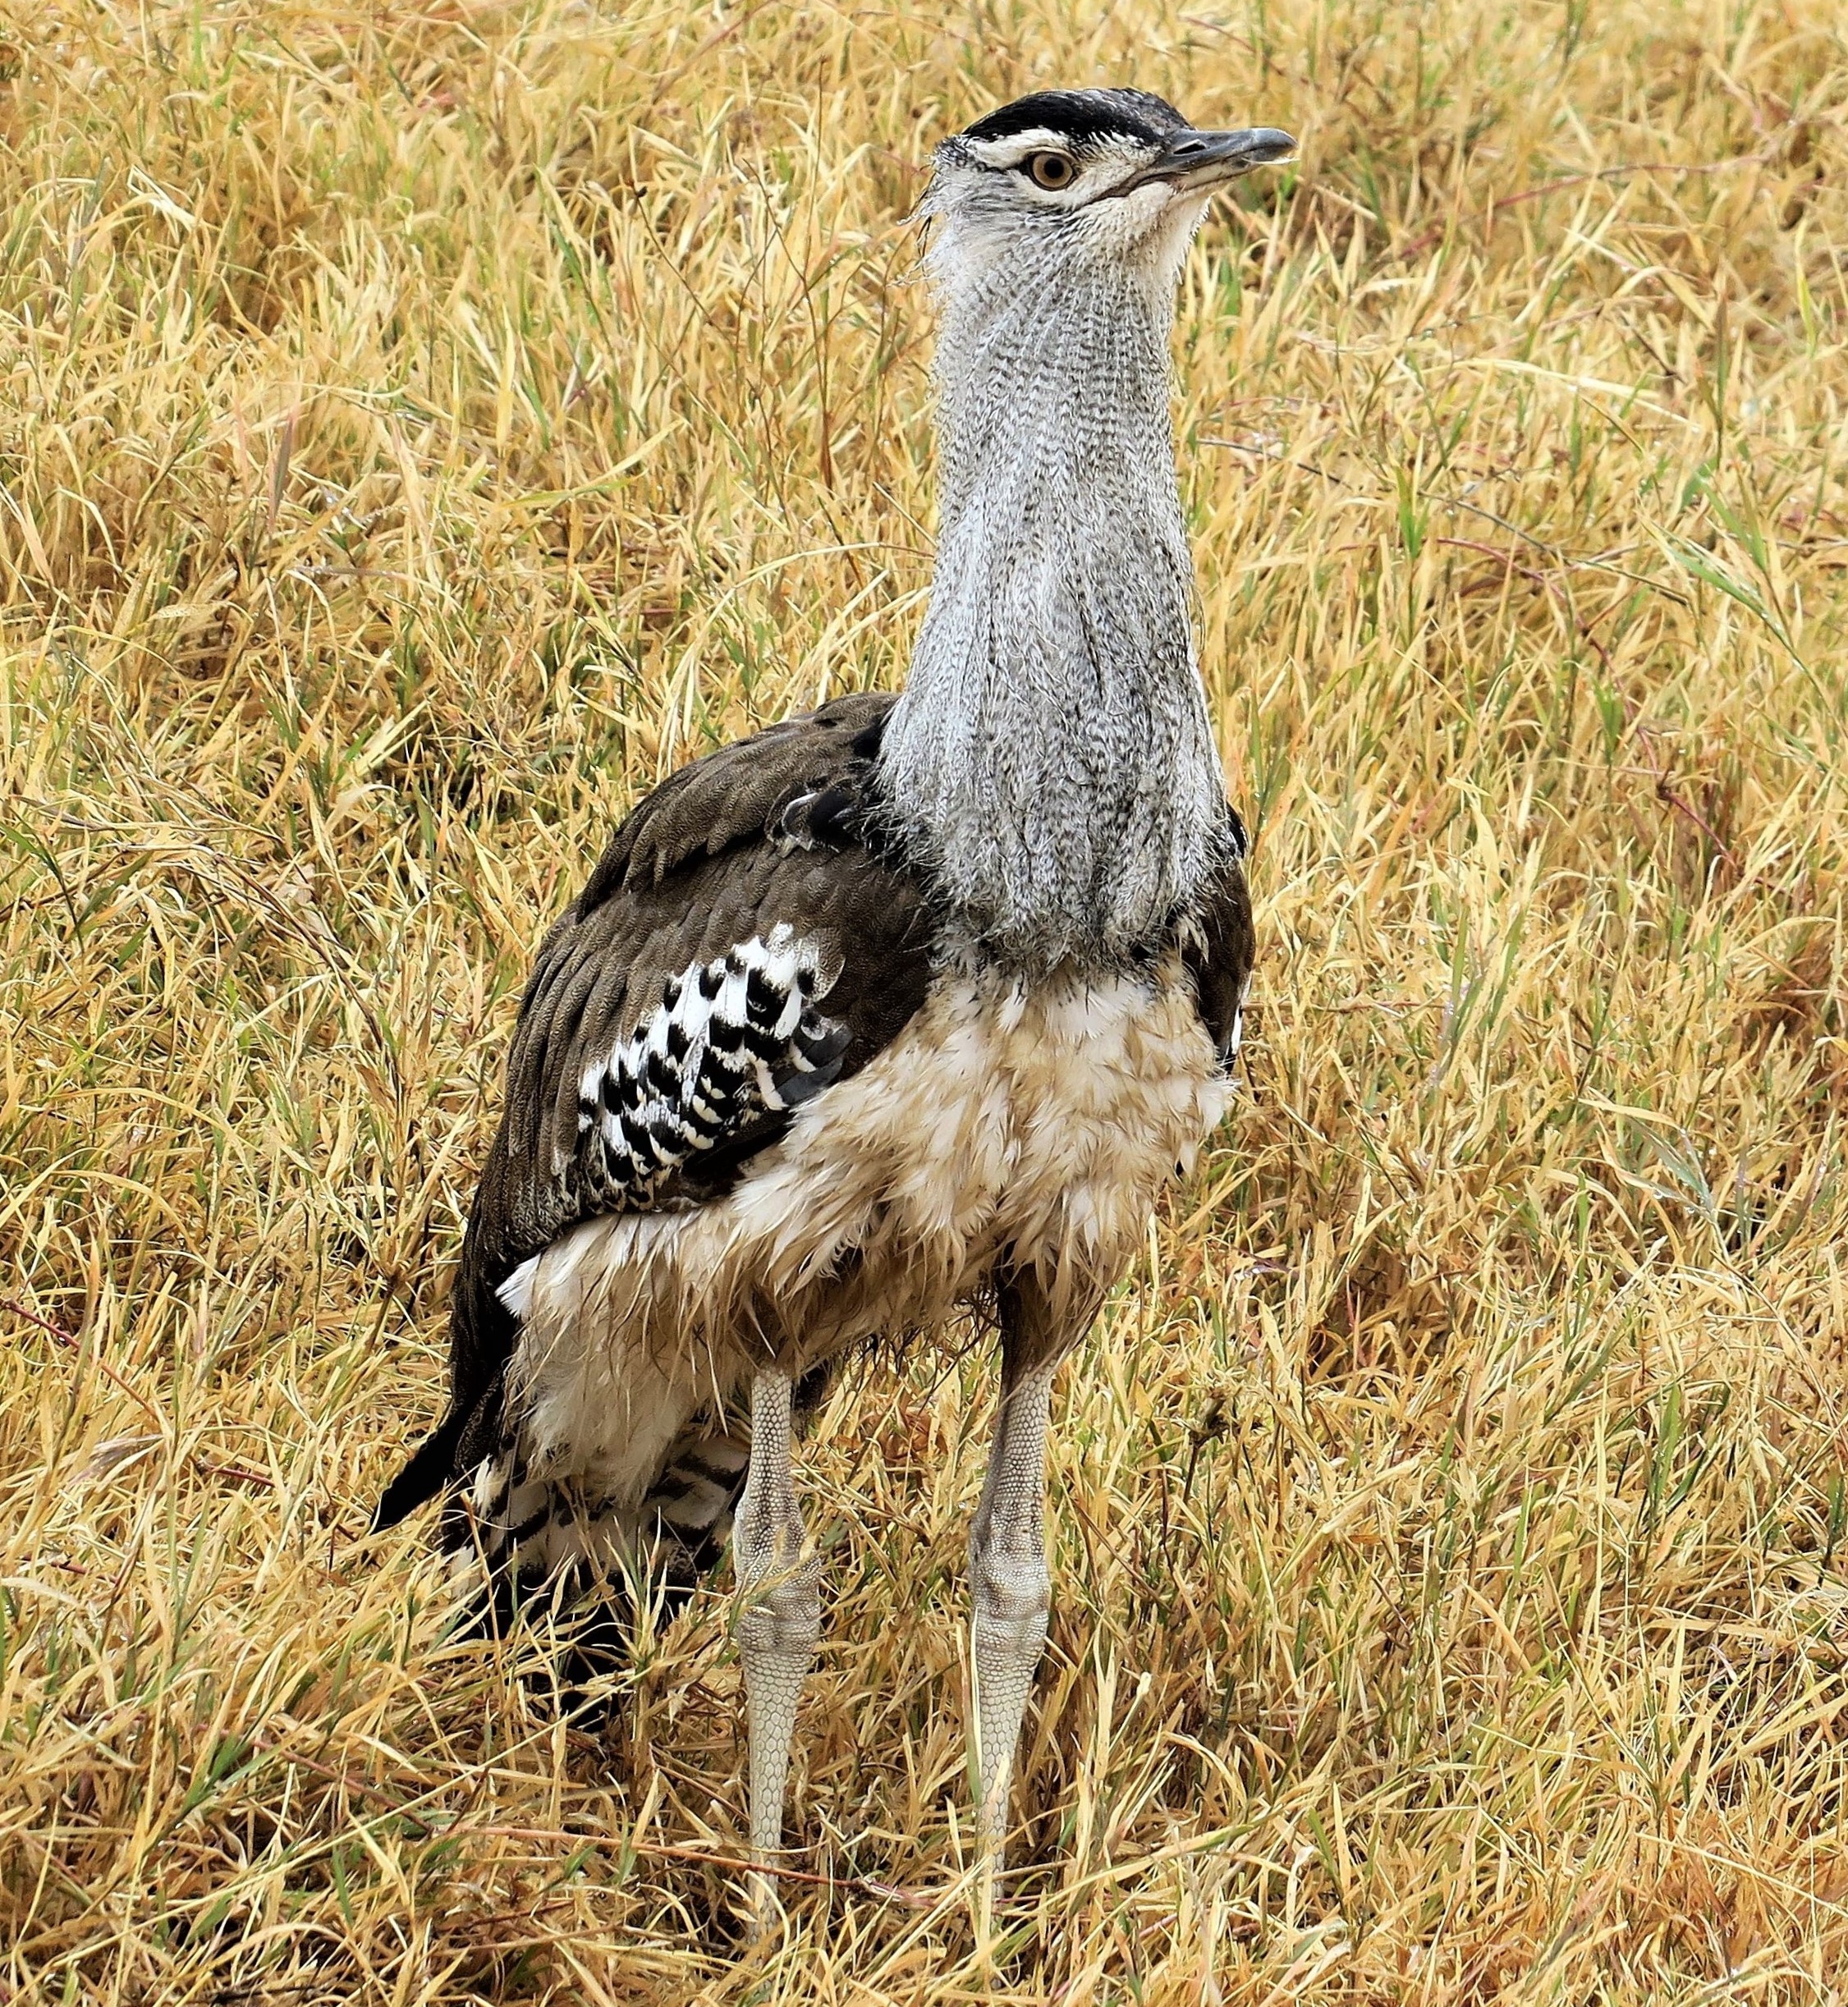 Ngorongoro Conservation Area Birdwatching